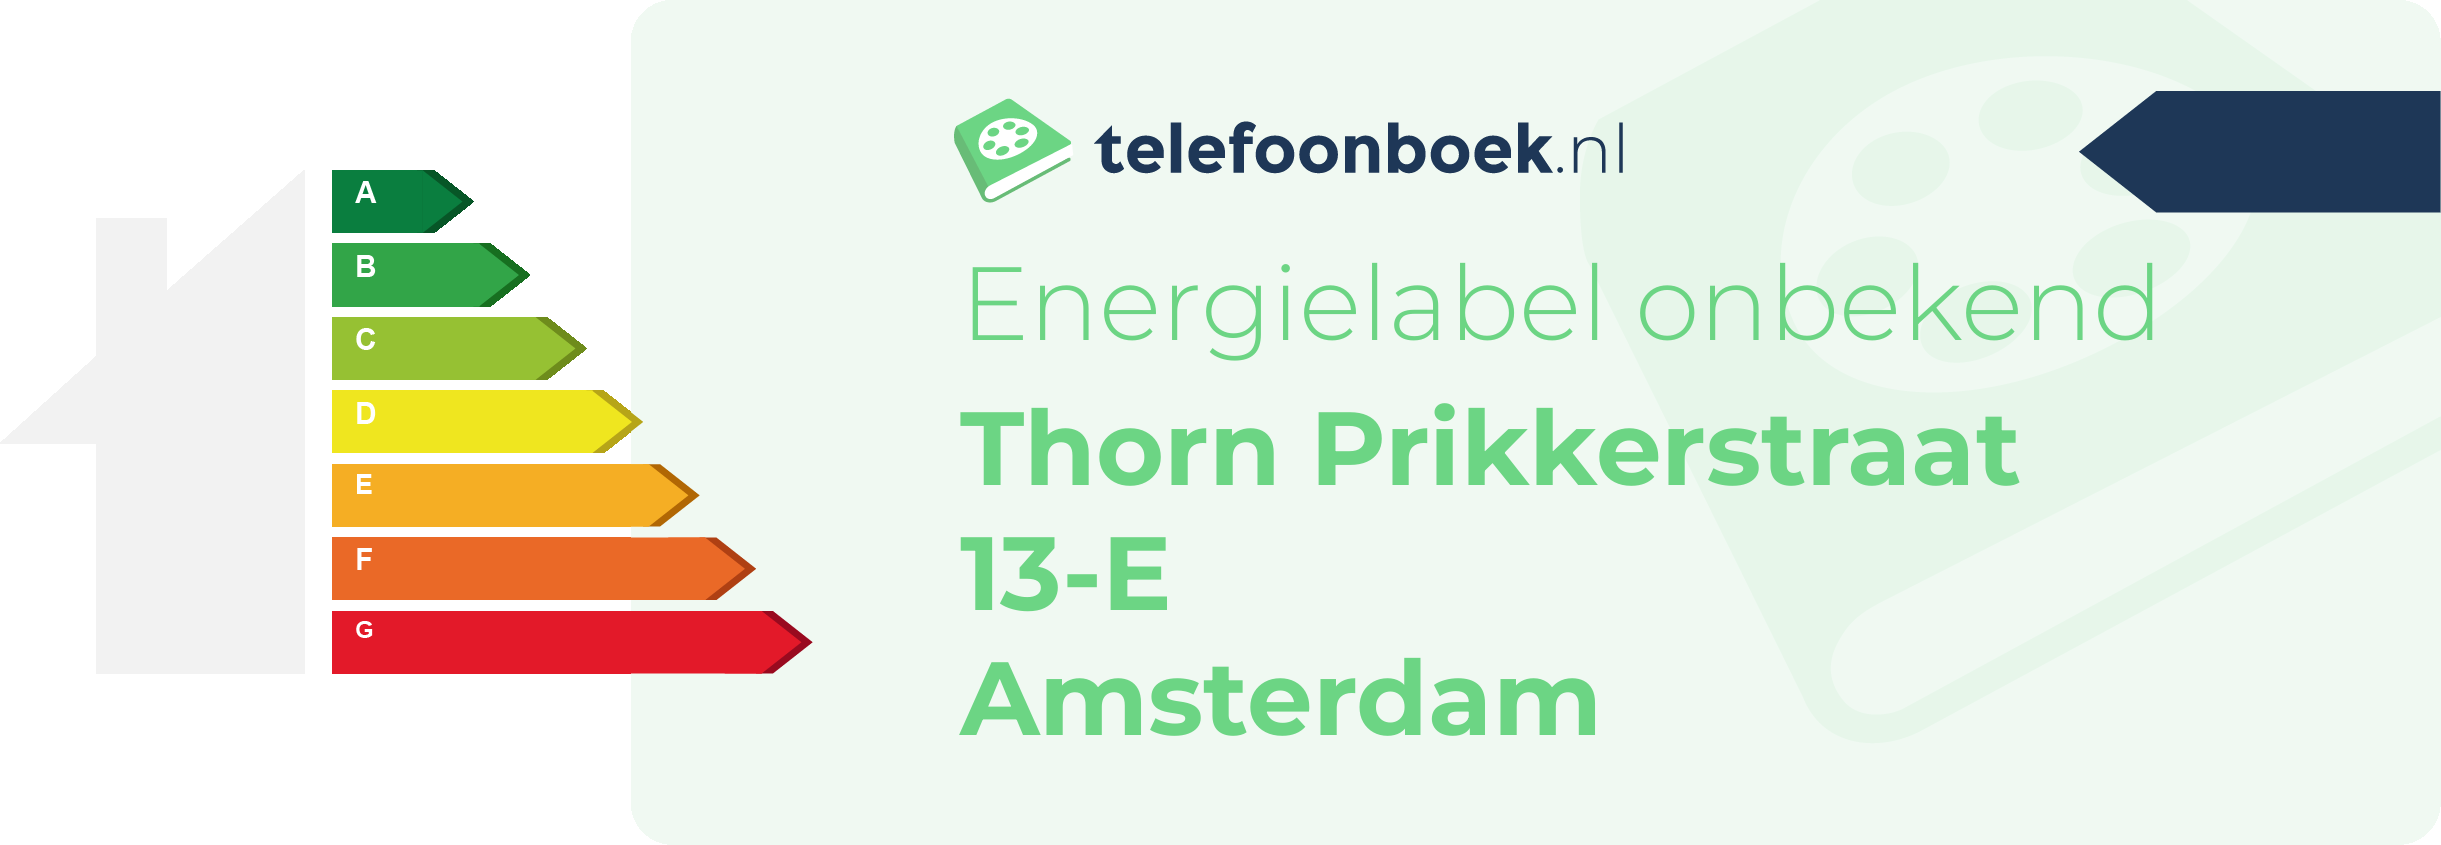 Energielabel Thorn Prikkerstraat 13-E Amsterdam